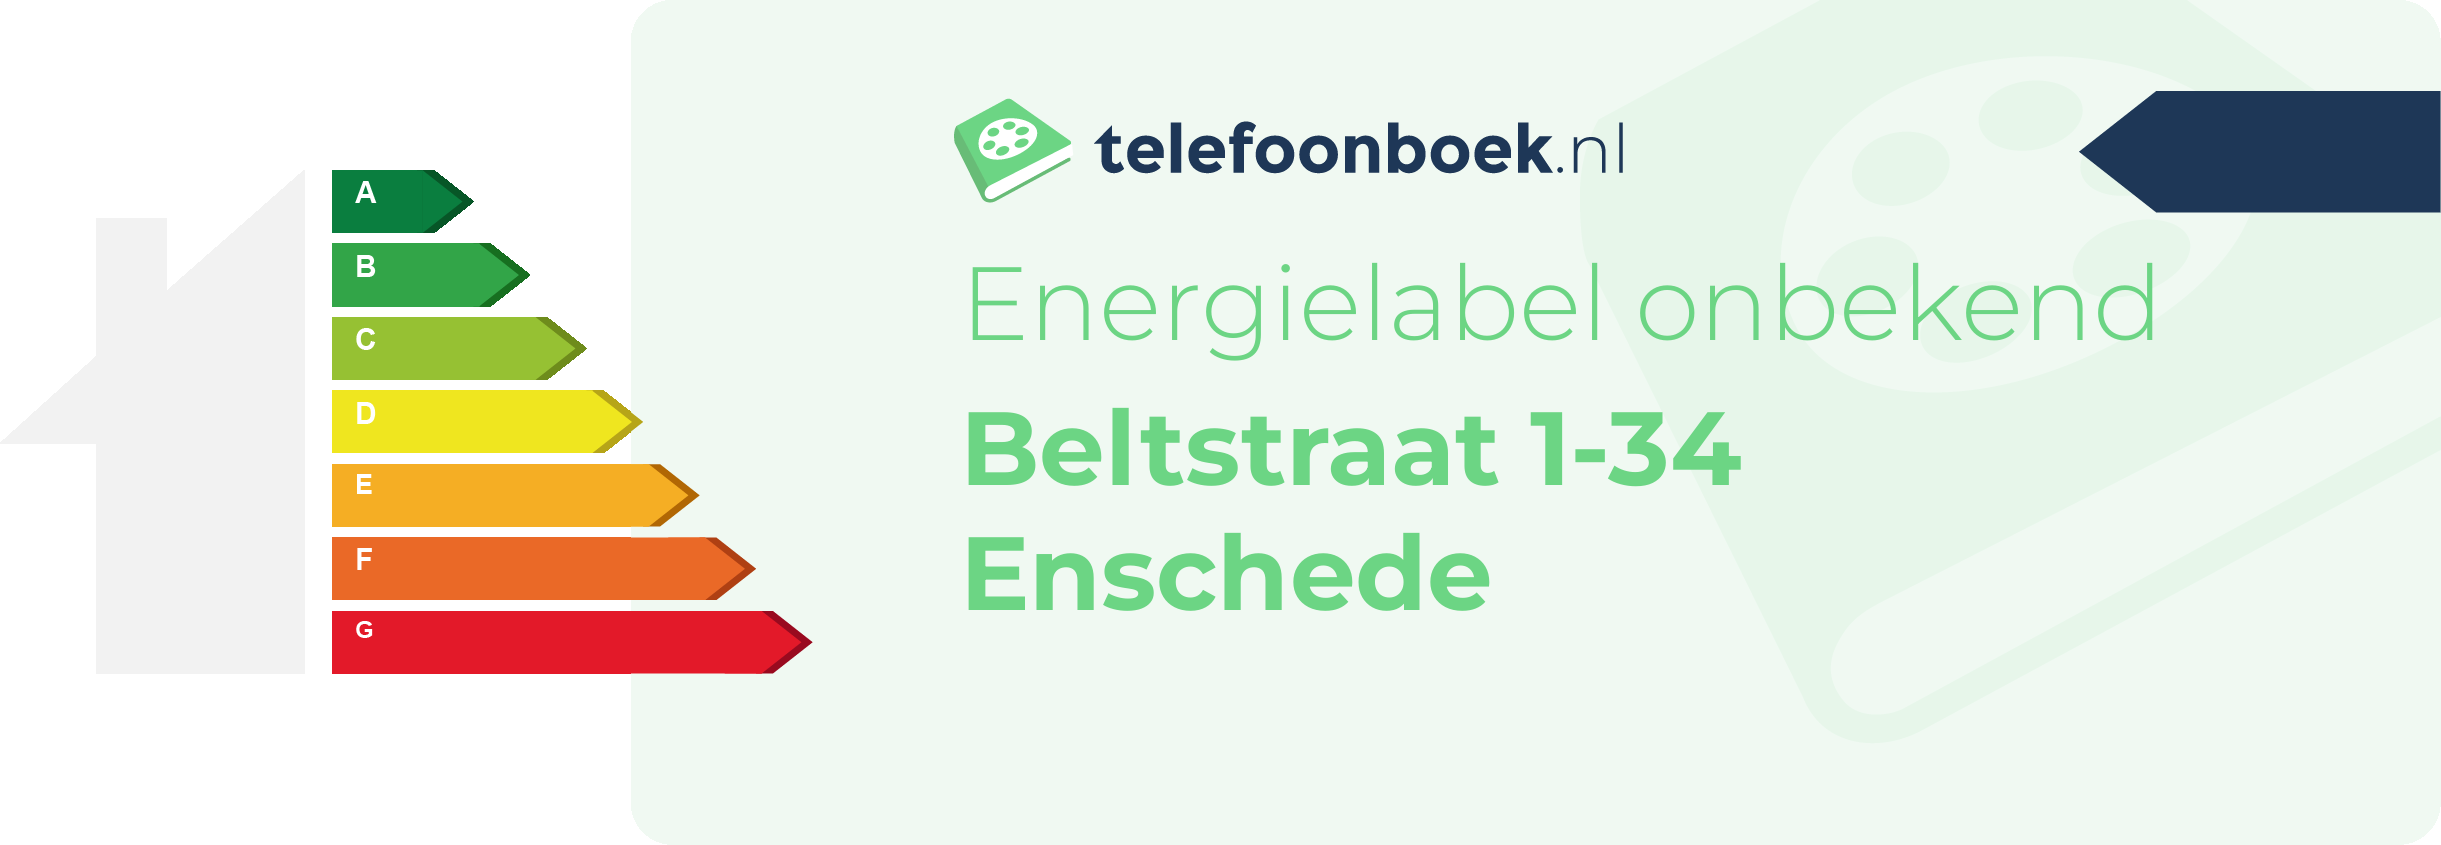 Energielabel Beltstraat 1-34 Enschede